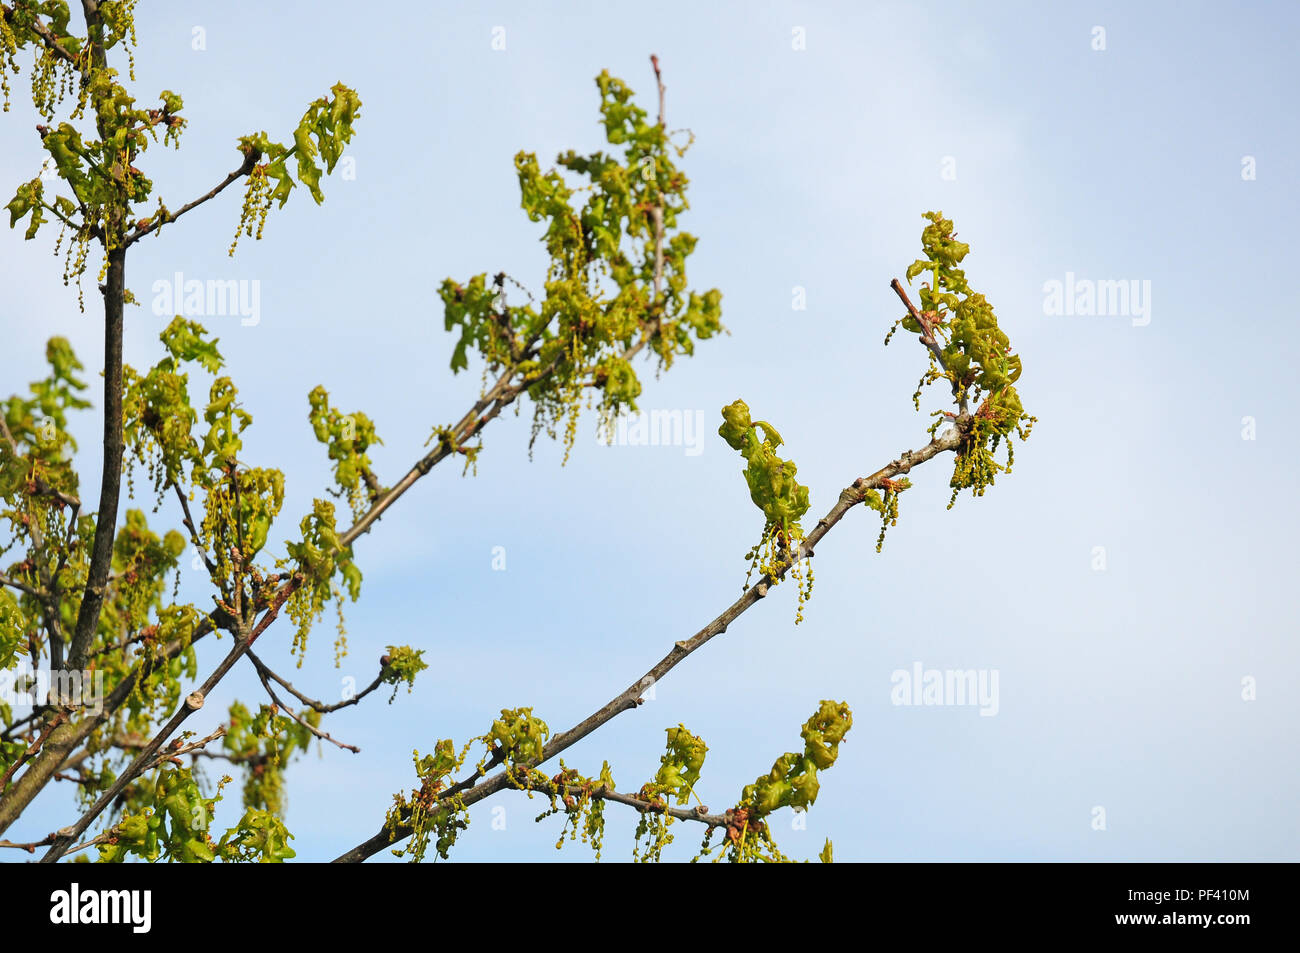 Las flores y las hojas nuevas de roble común, Quercus robur. Foto de stock